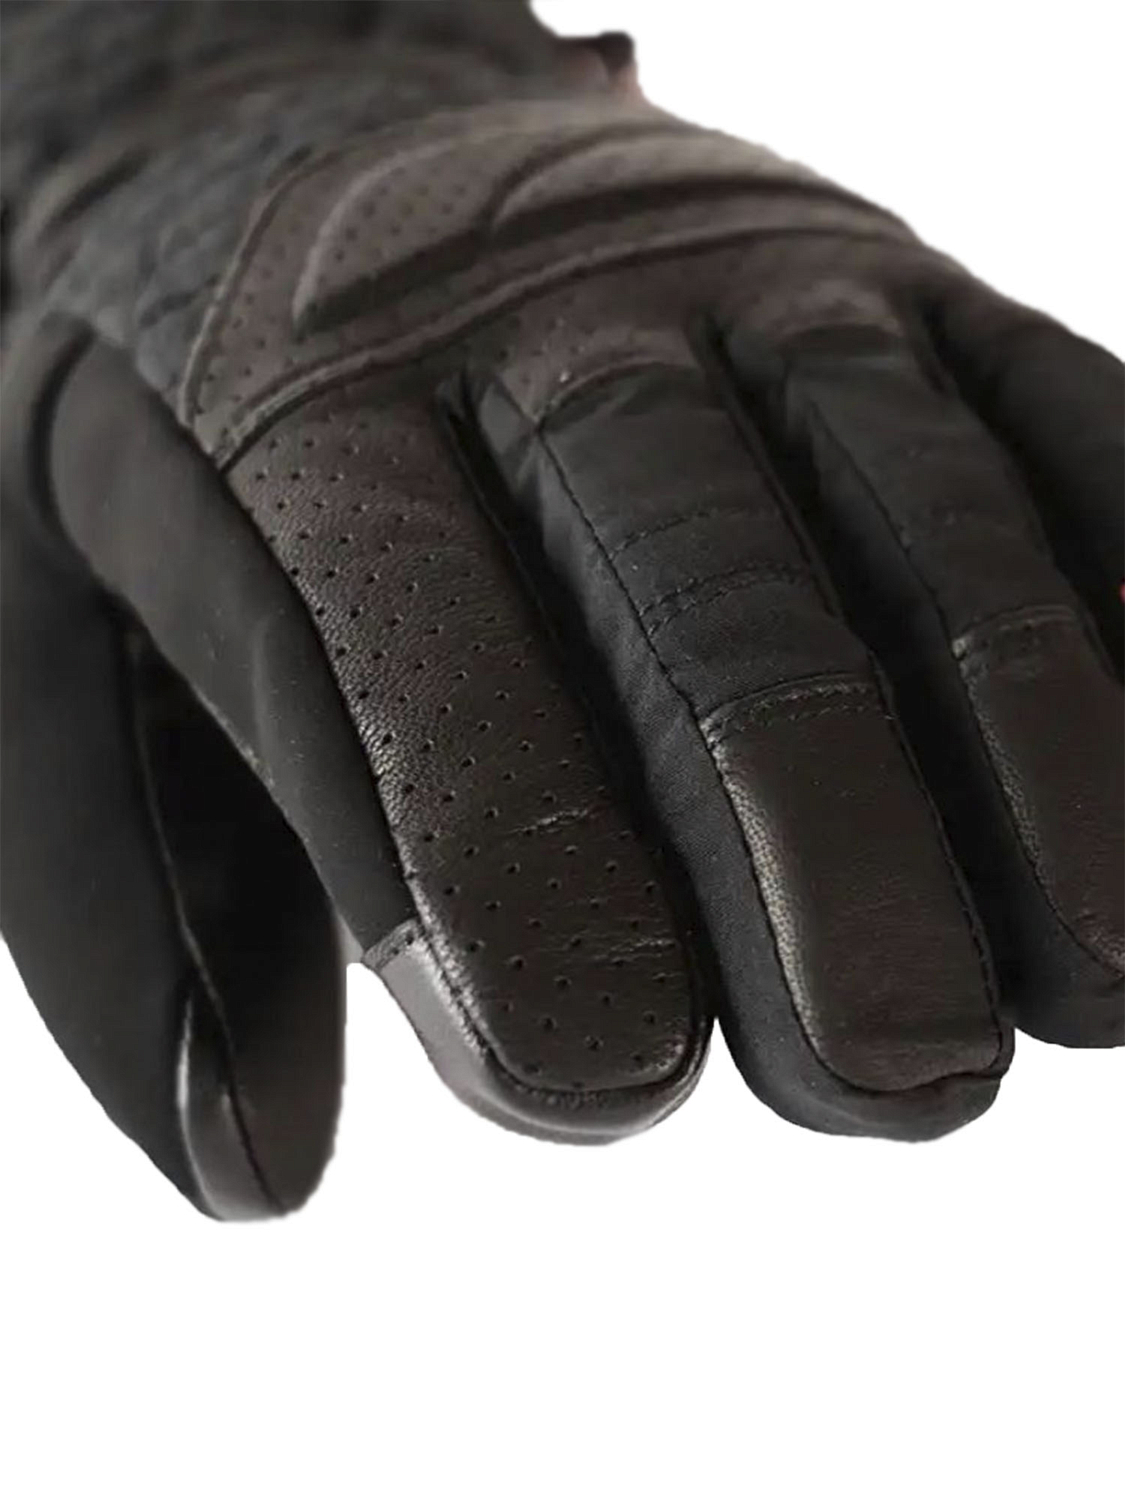 Перчатки с обогревом LENZ Heat Glove 6.0 Finger Cap Women Black